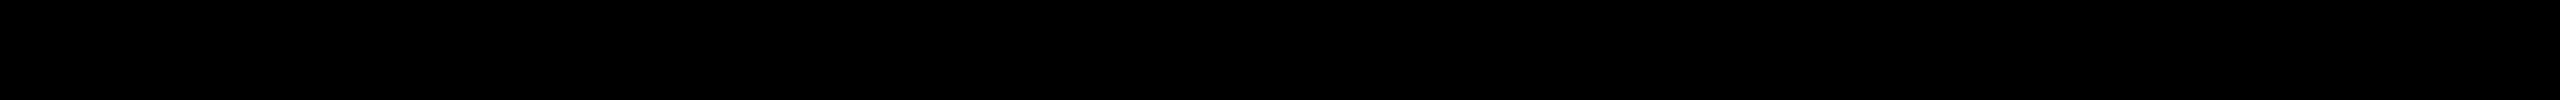 Hintergrund Elo_2_Zeichenfläche 1